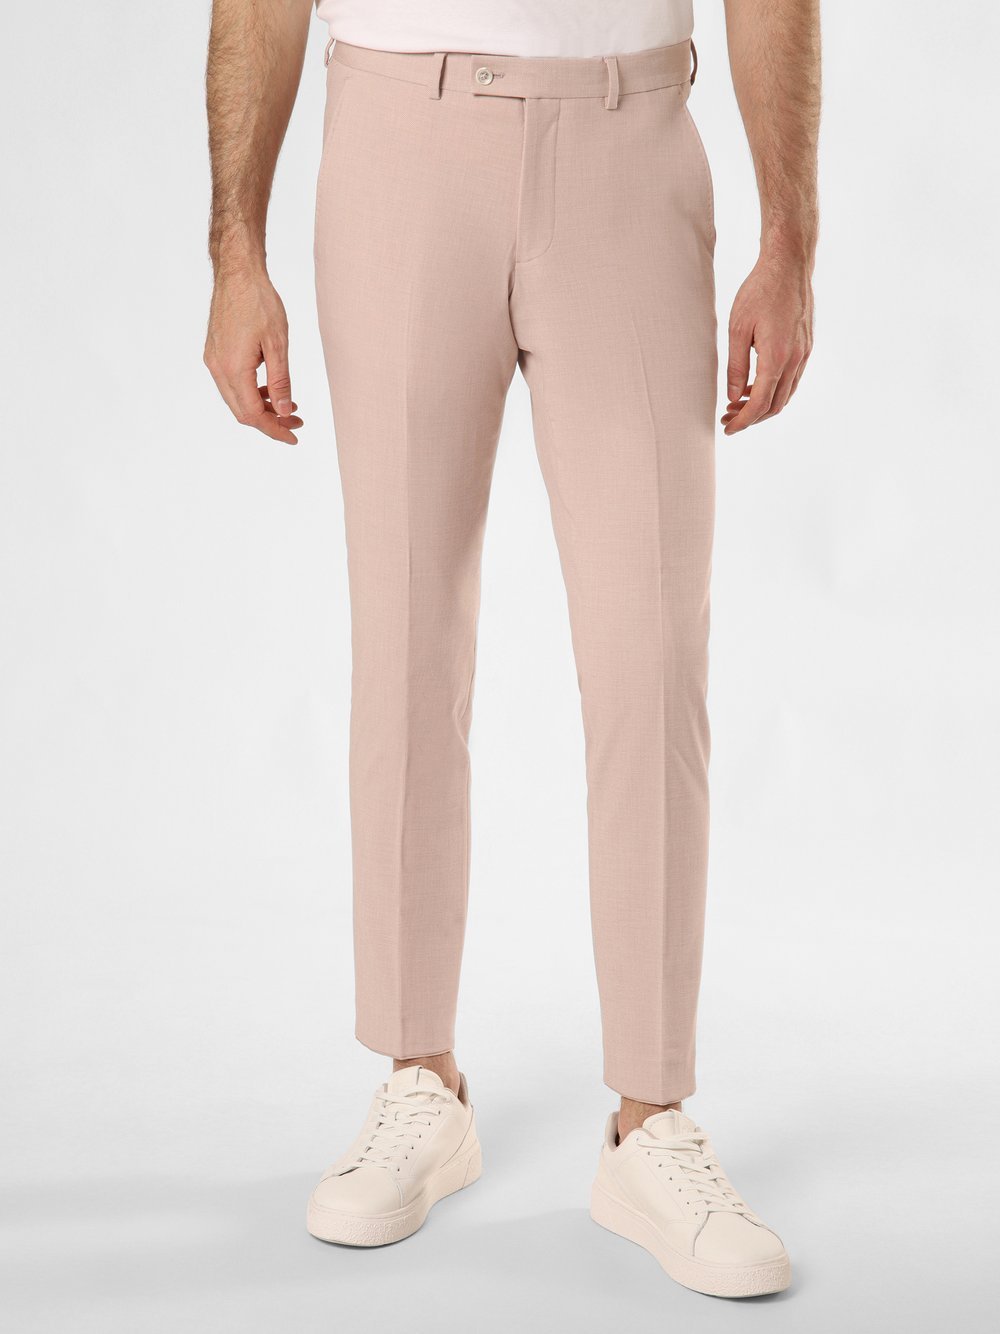 Finshley & Harding London Spodnie - Hoxdon Mężczyźni Slim Fit różowy marmurkowy, 50